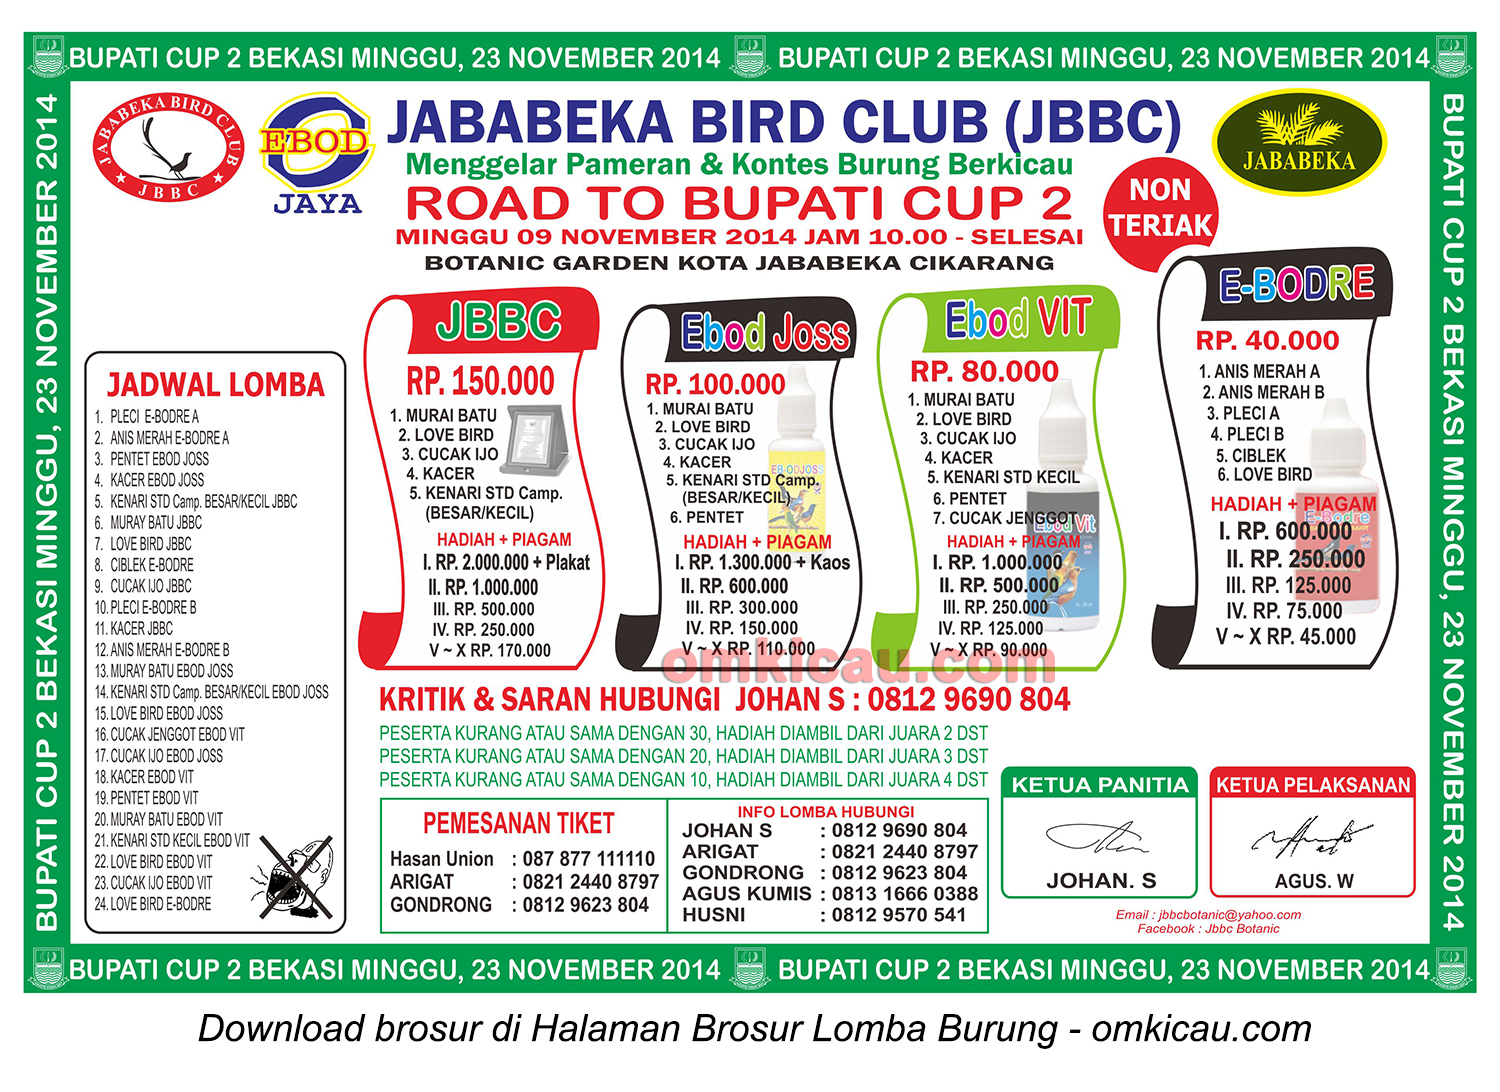 Brosur Lomba Burung Berkicau Road to Bupati Cup 2, Bekasi, 9 November 2014